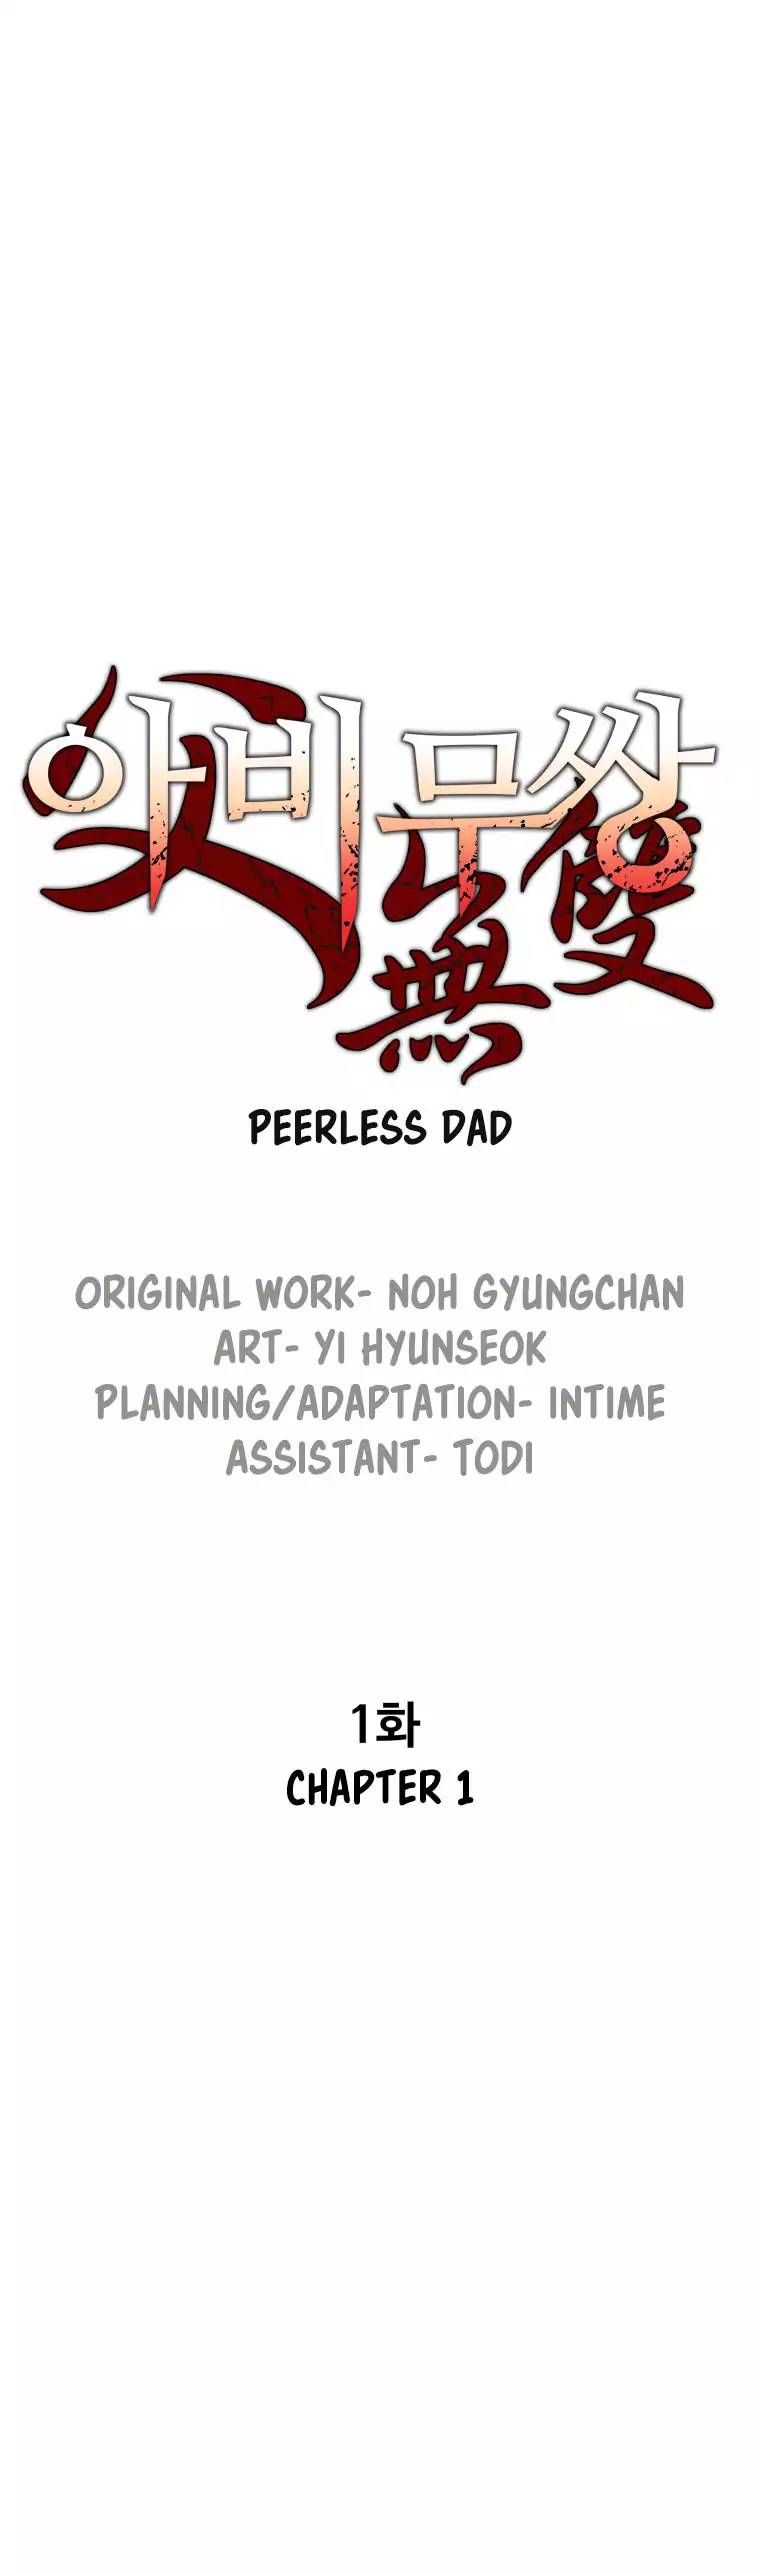 peerless_dad_1_9